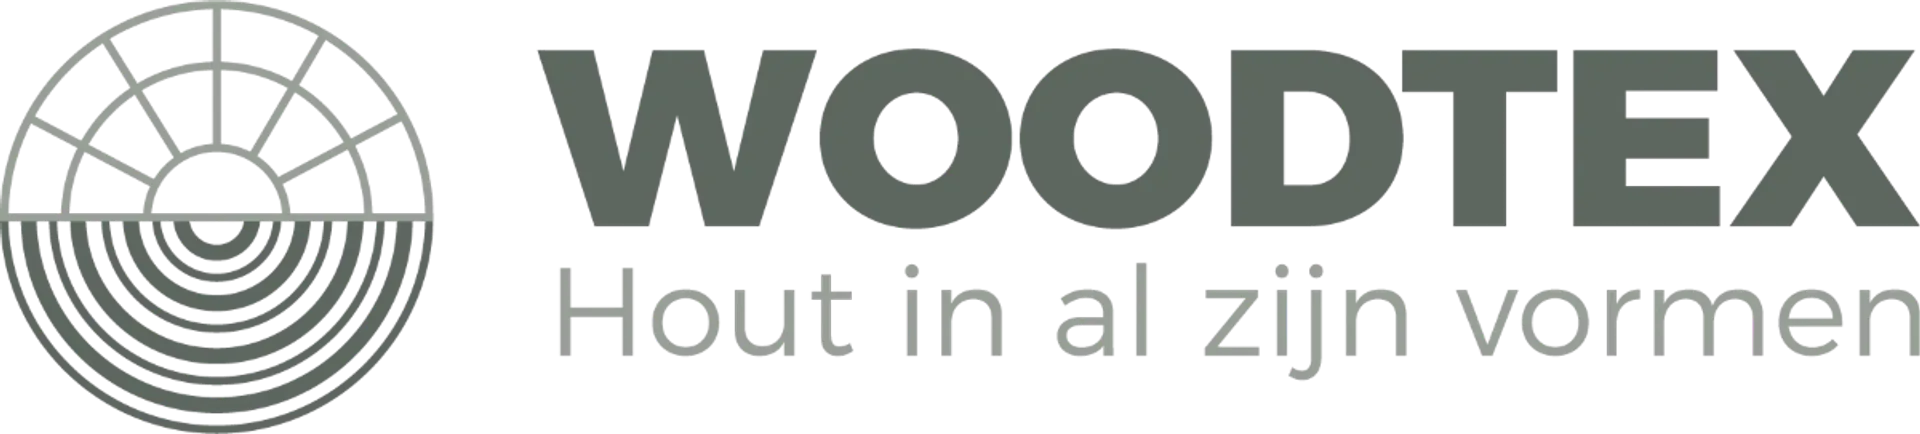 WOODTEX logo